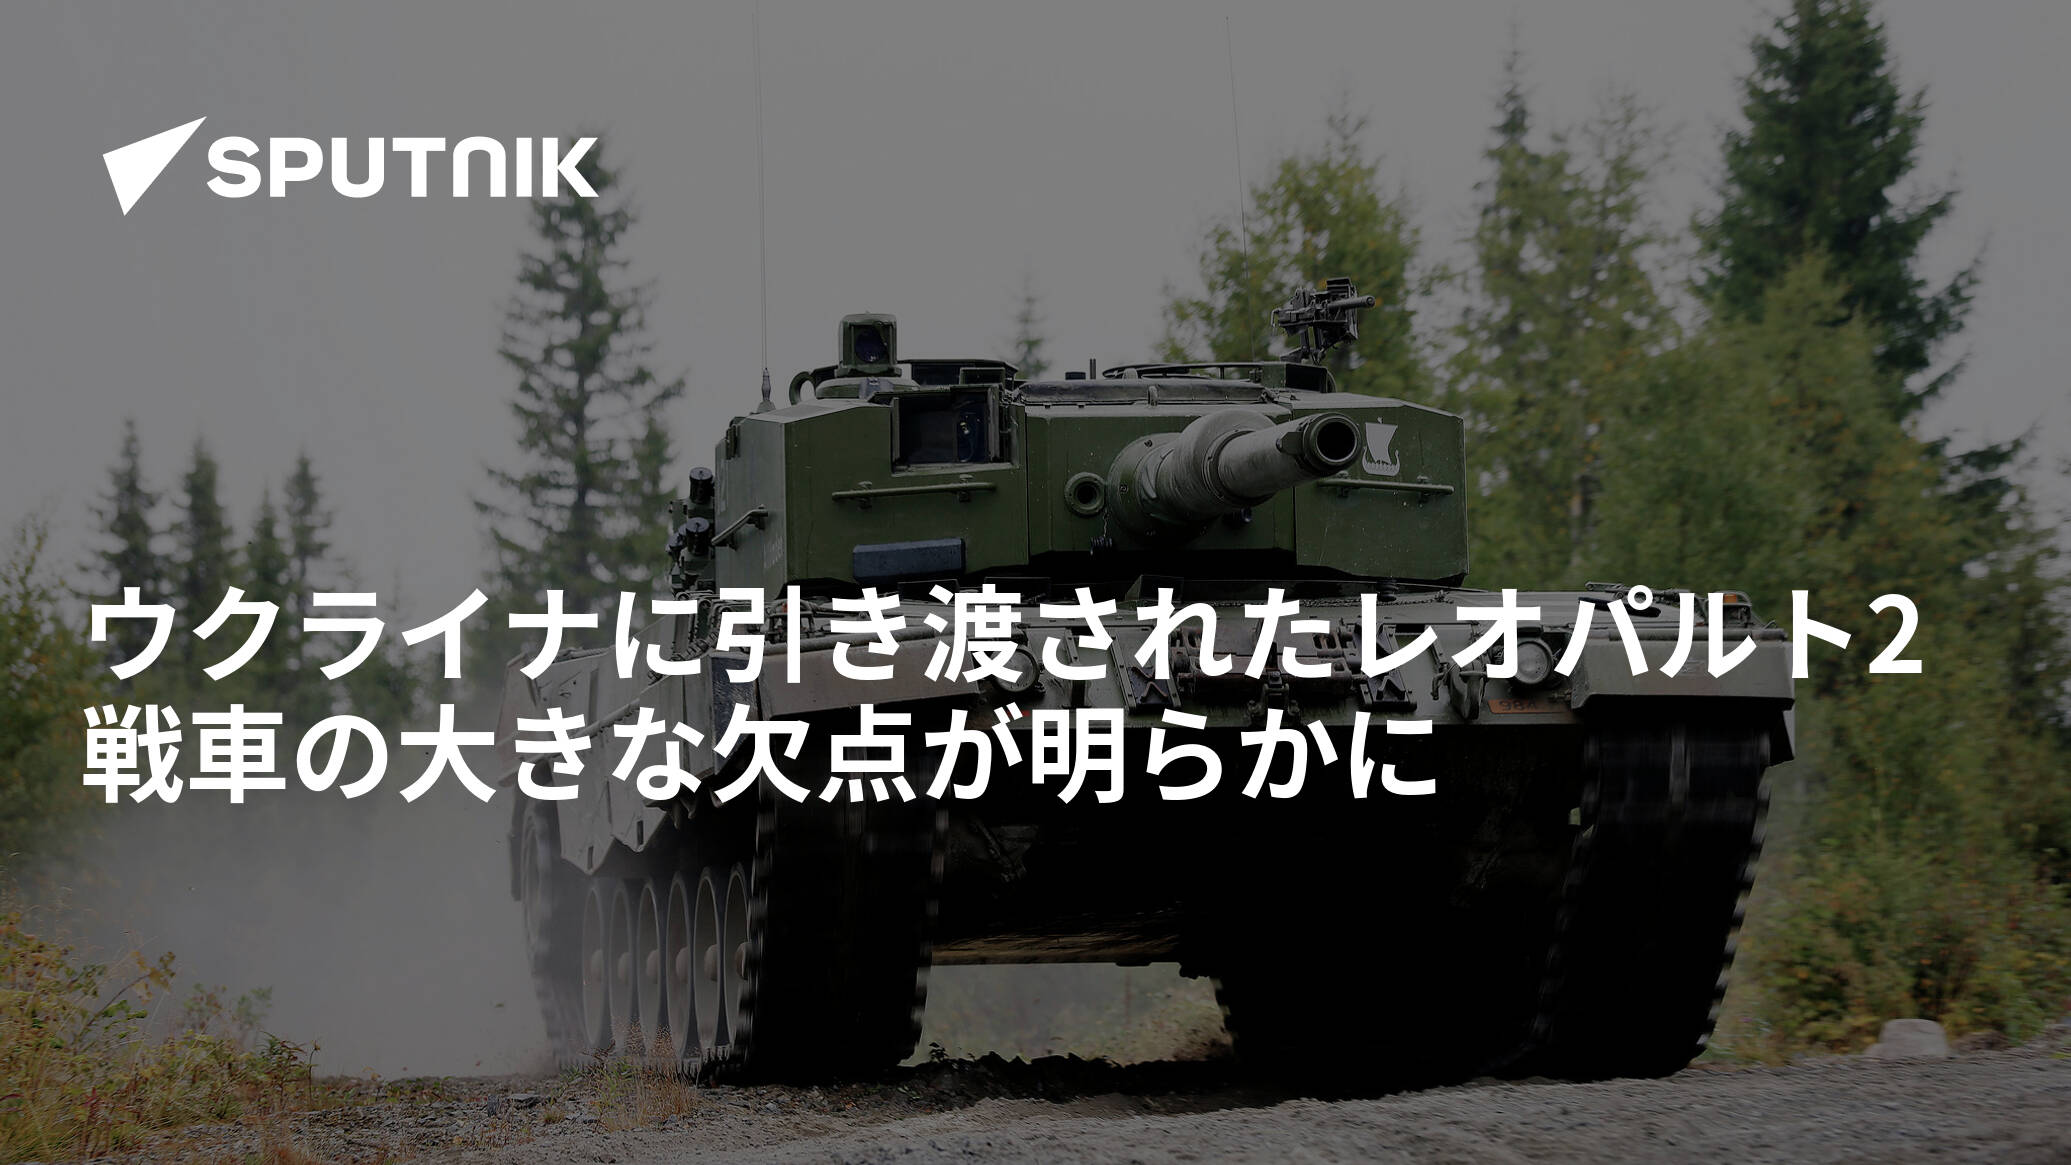 ウクライナに引き渡されたレオパルト2戦車の大きな欠点が明らかに